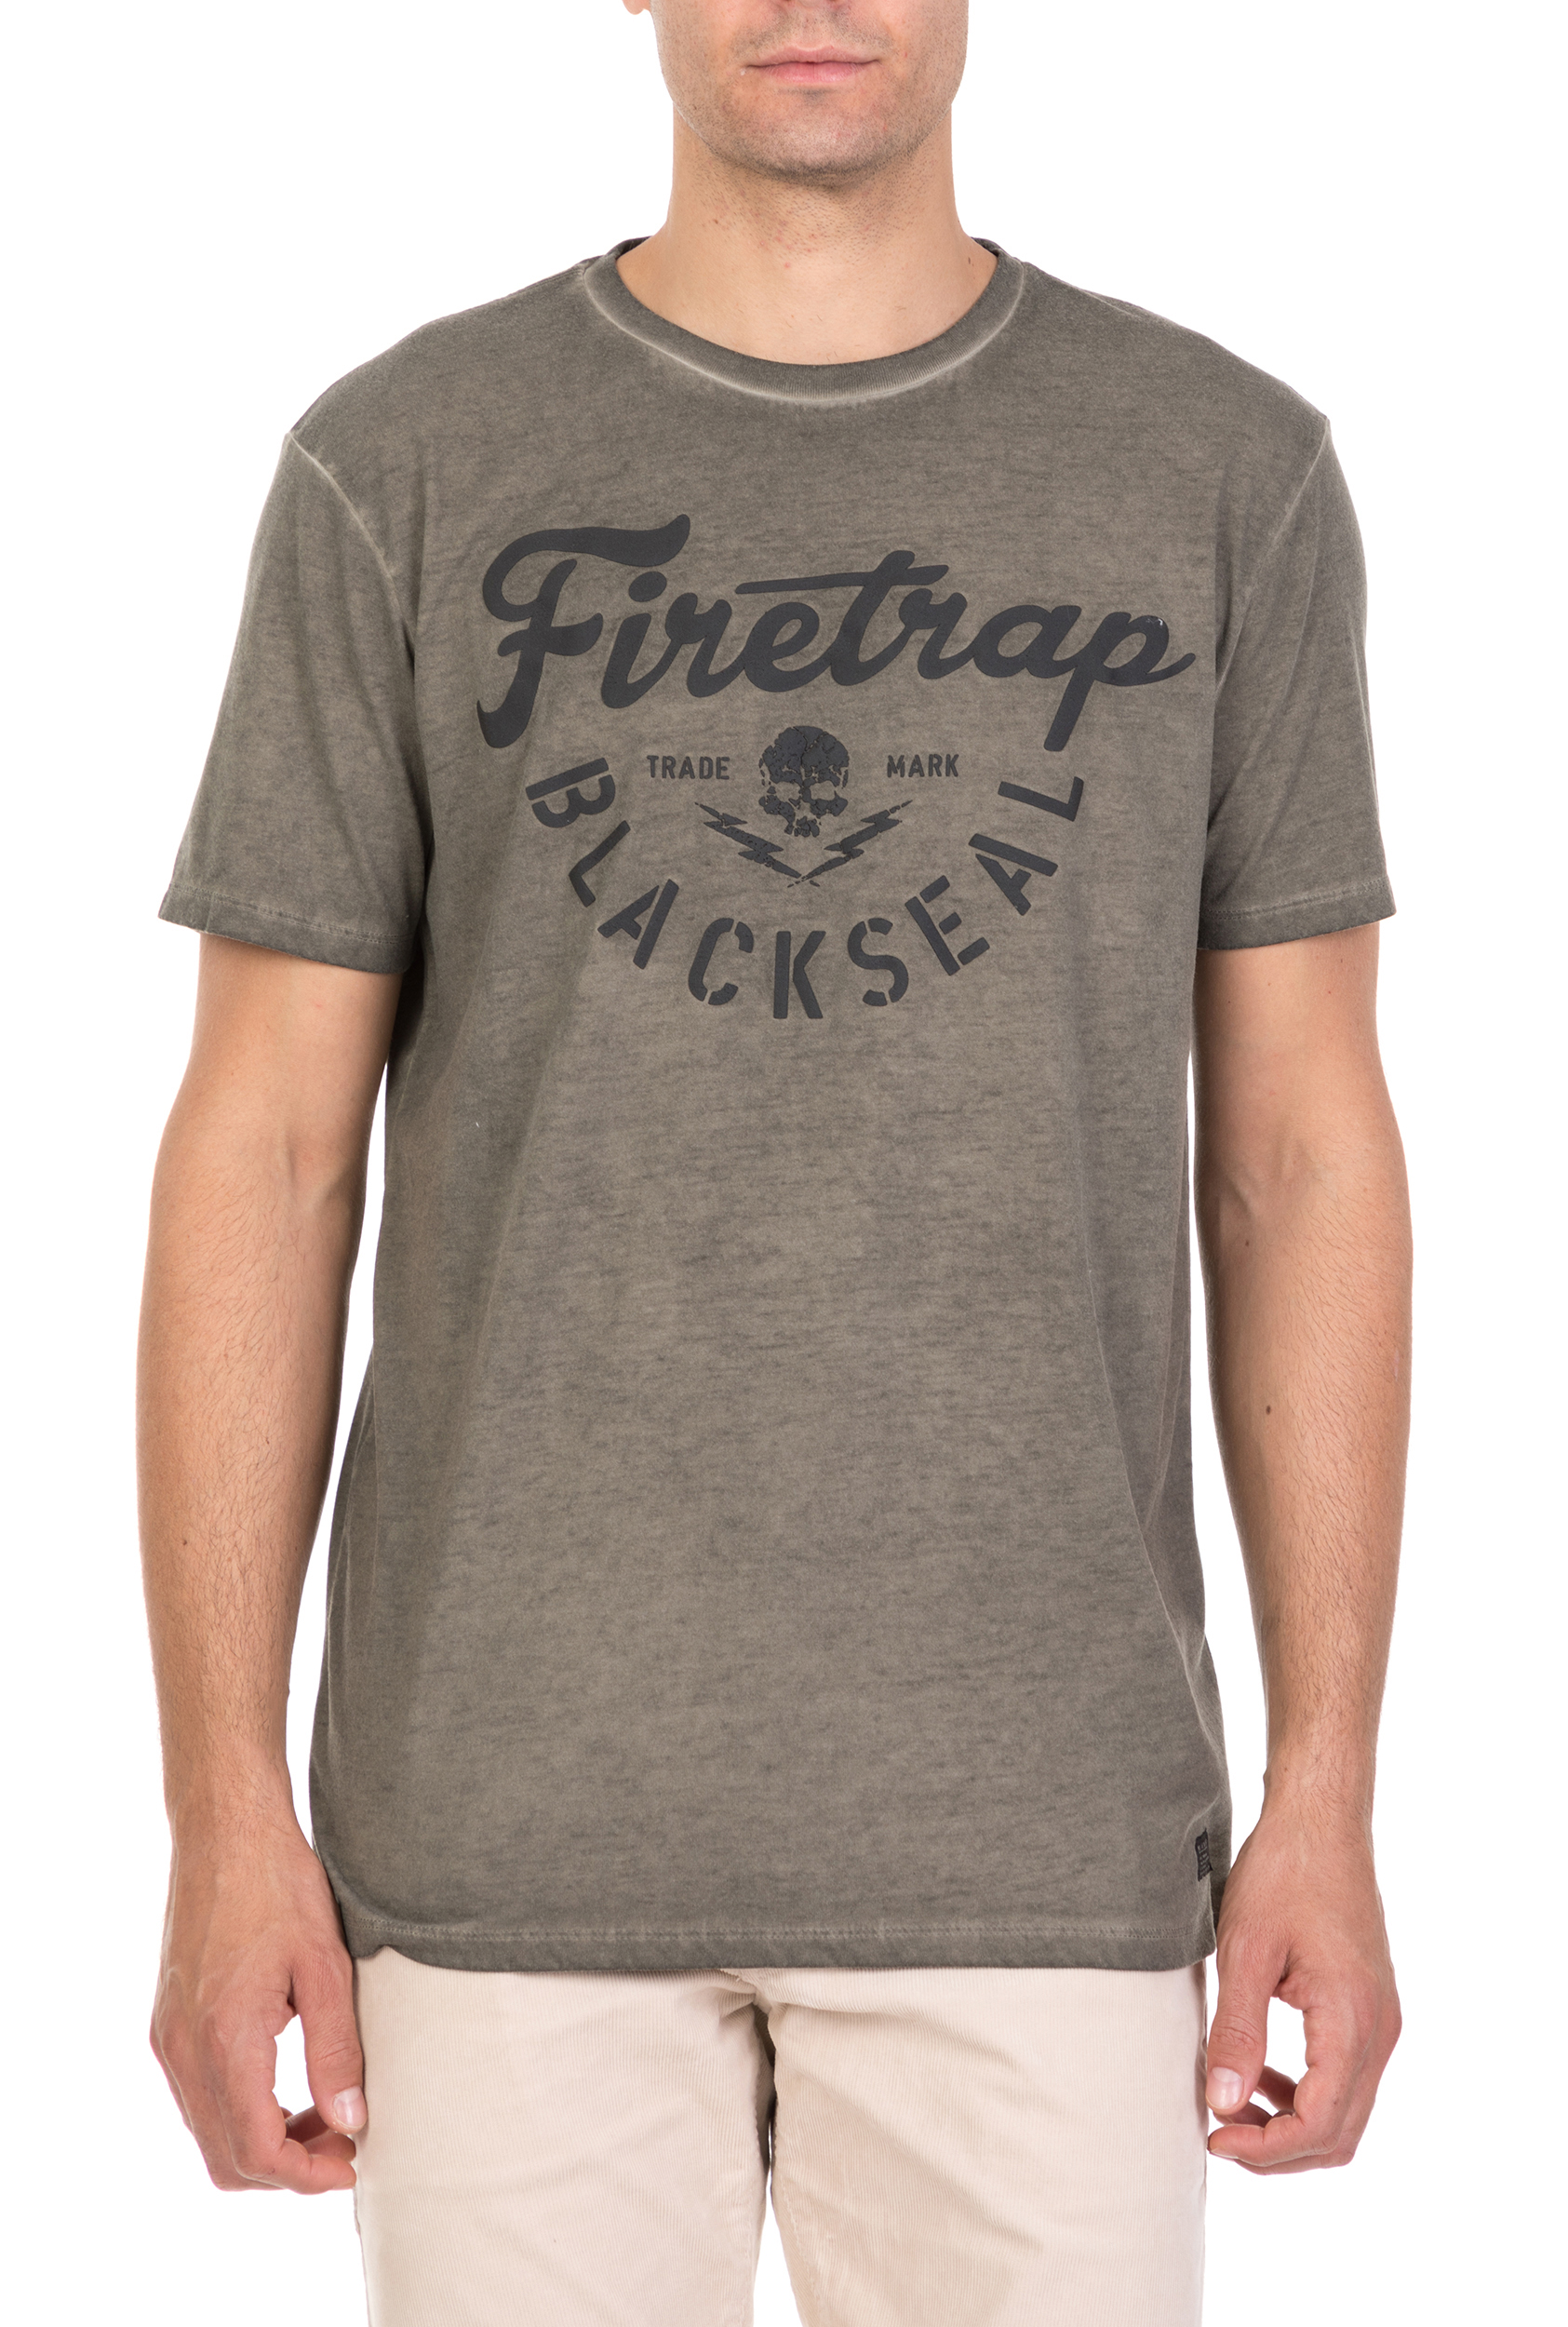 Ανδρικά/Ρούχα/Μπλούζες/Κοντομάνικες FIRETRAP - Ανδρική κοντομάνικη μπλούζα Firetrap Cypher χακί